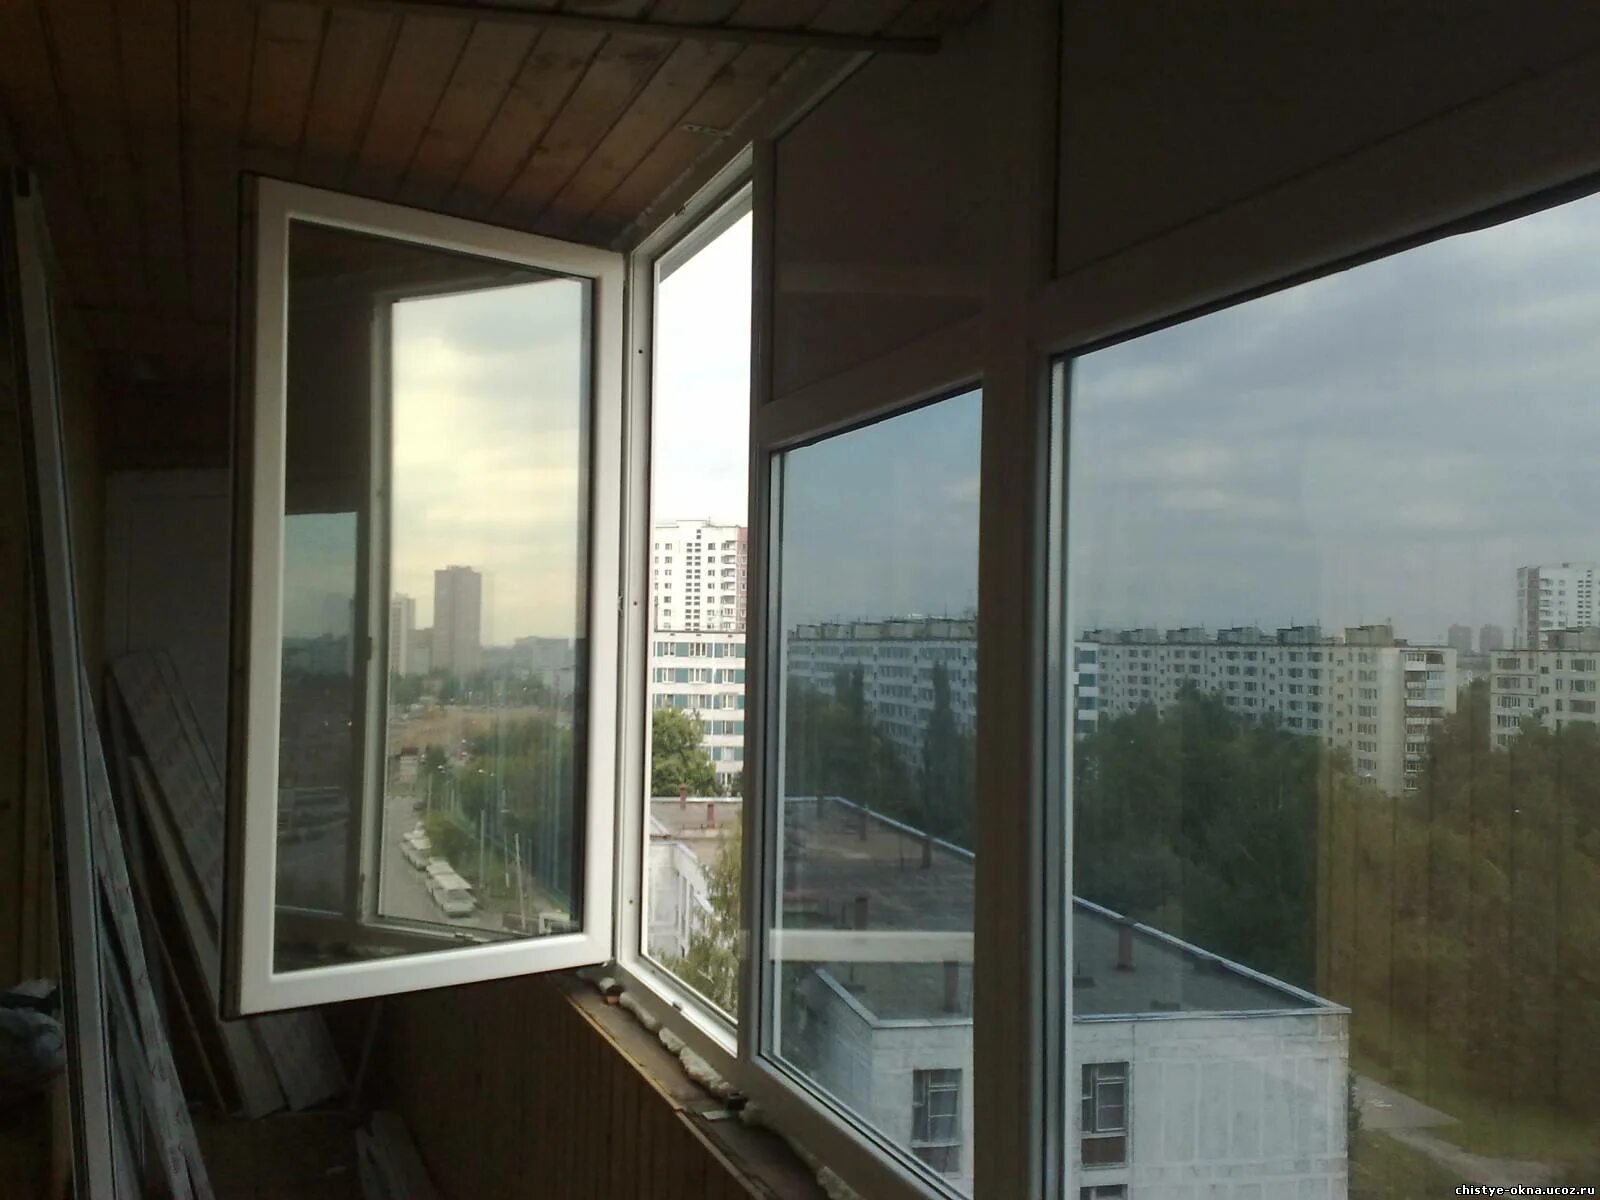 Тонированные окна на балконе. Зеркальная тонировка балкона. Тонировочная пленка для балкона. Затемненные стеклопакеты на балкон.